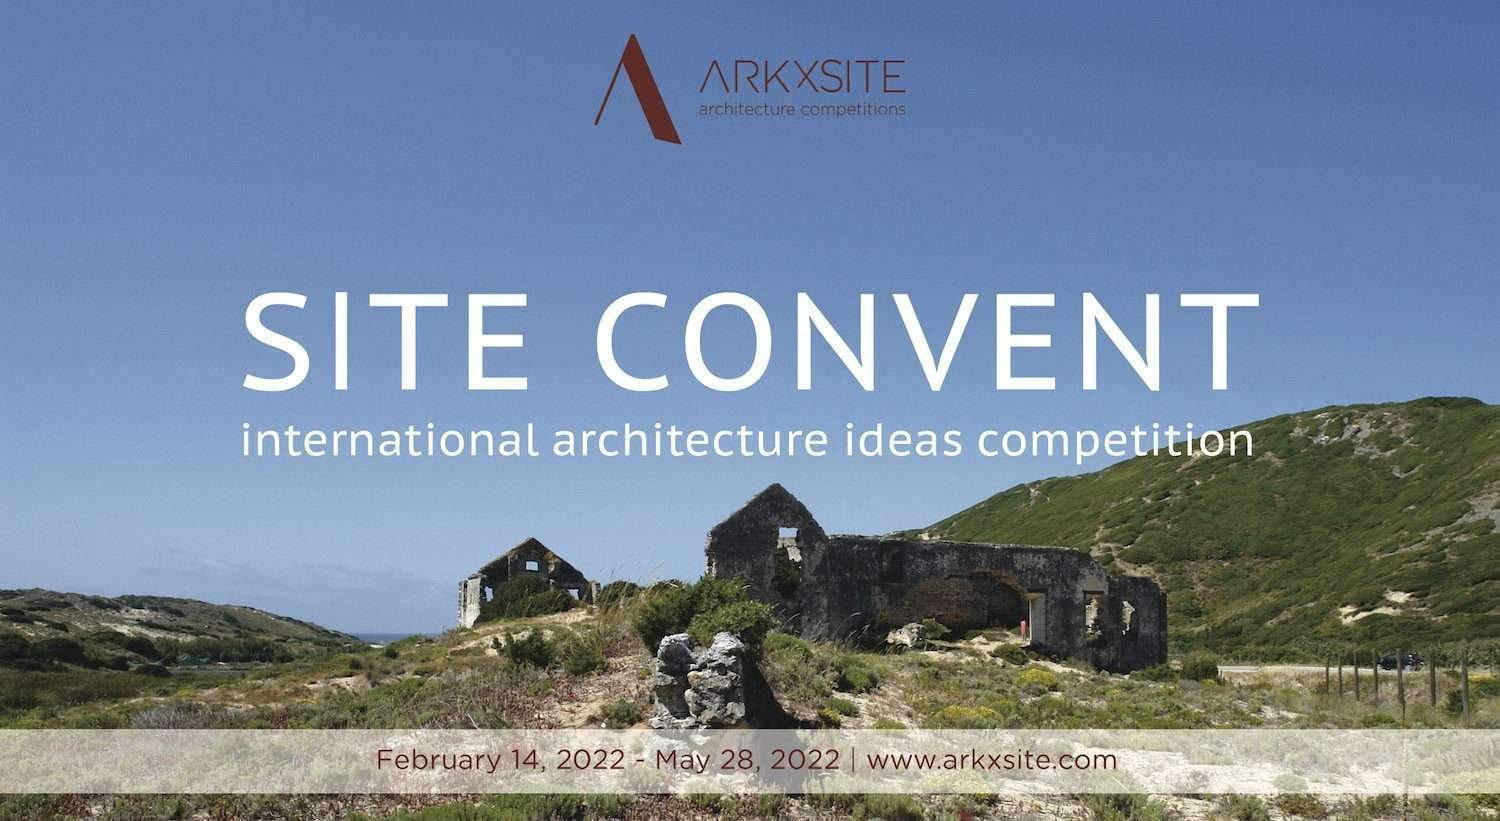 SITE CONVENT | اتفاقية الموقع: مسابقة أفكار العمارة الدولية